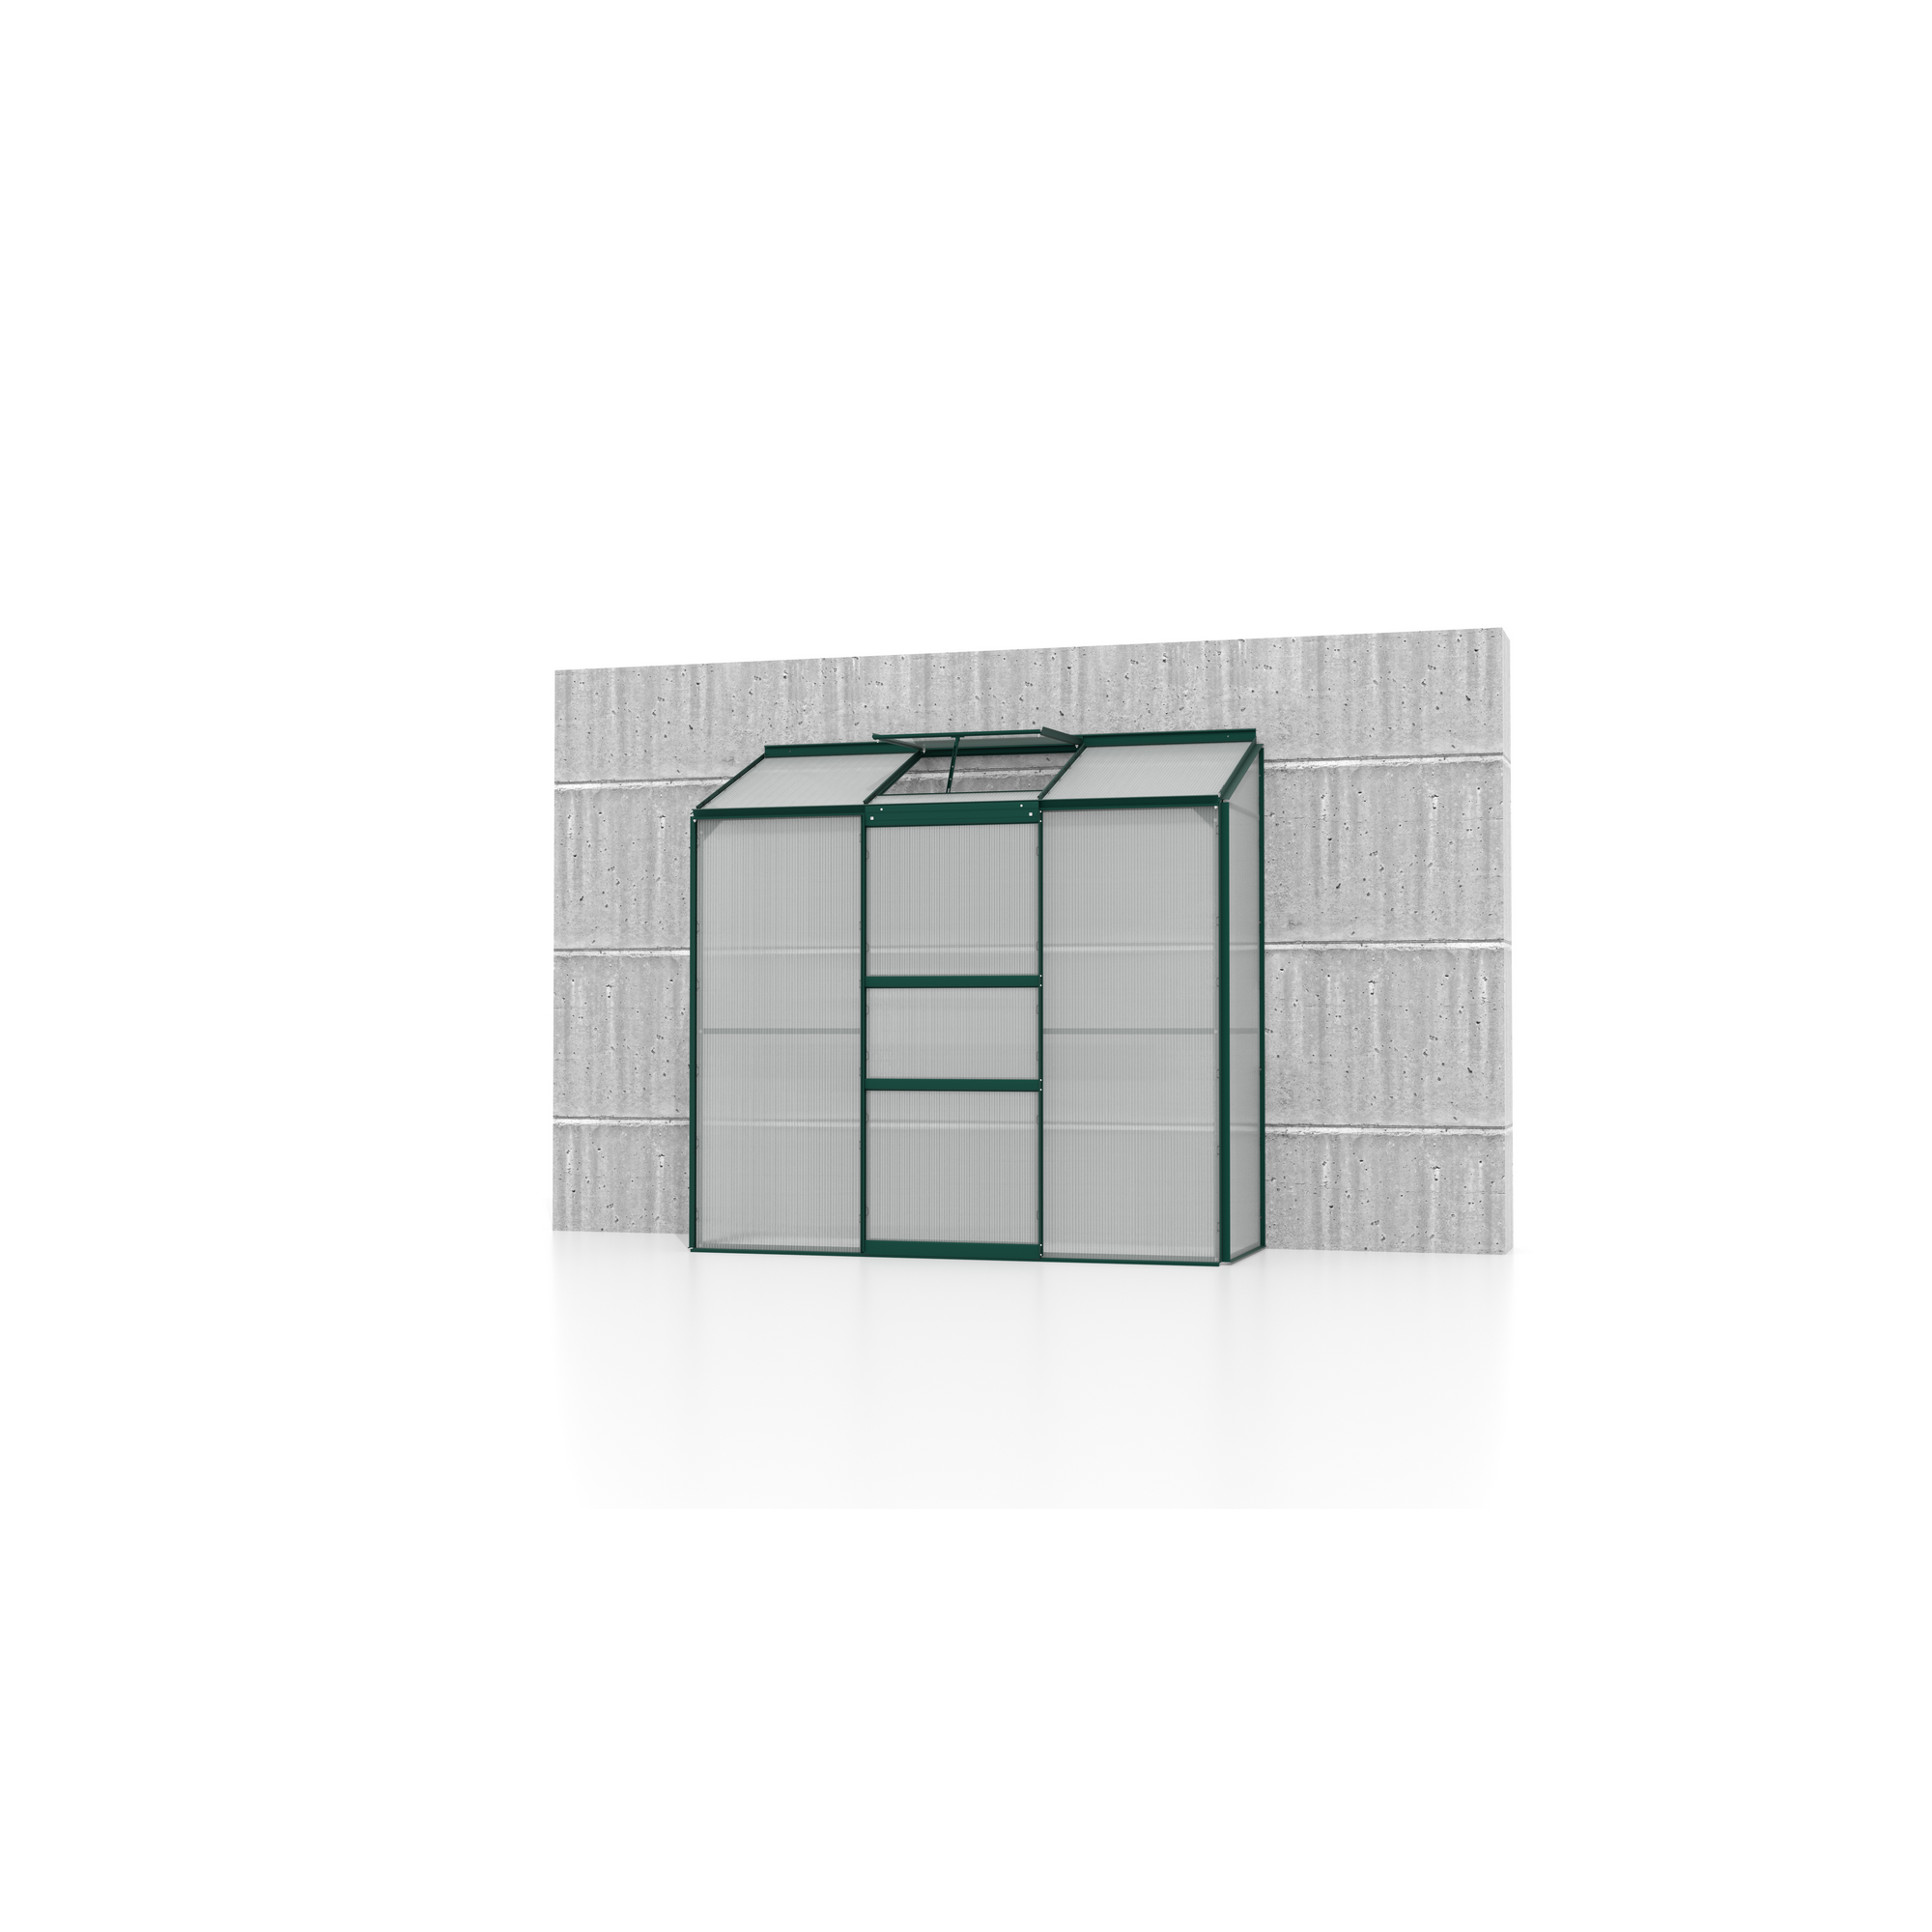 Anlehngewächshaus 'Ida 1300' 1,3 m² 192 x 65 cm 4 mm Hohlkammerplatten smaragdfarben + product picture